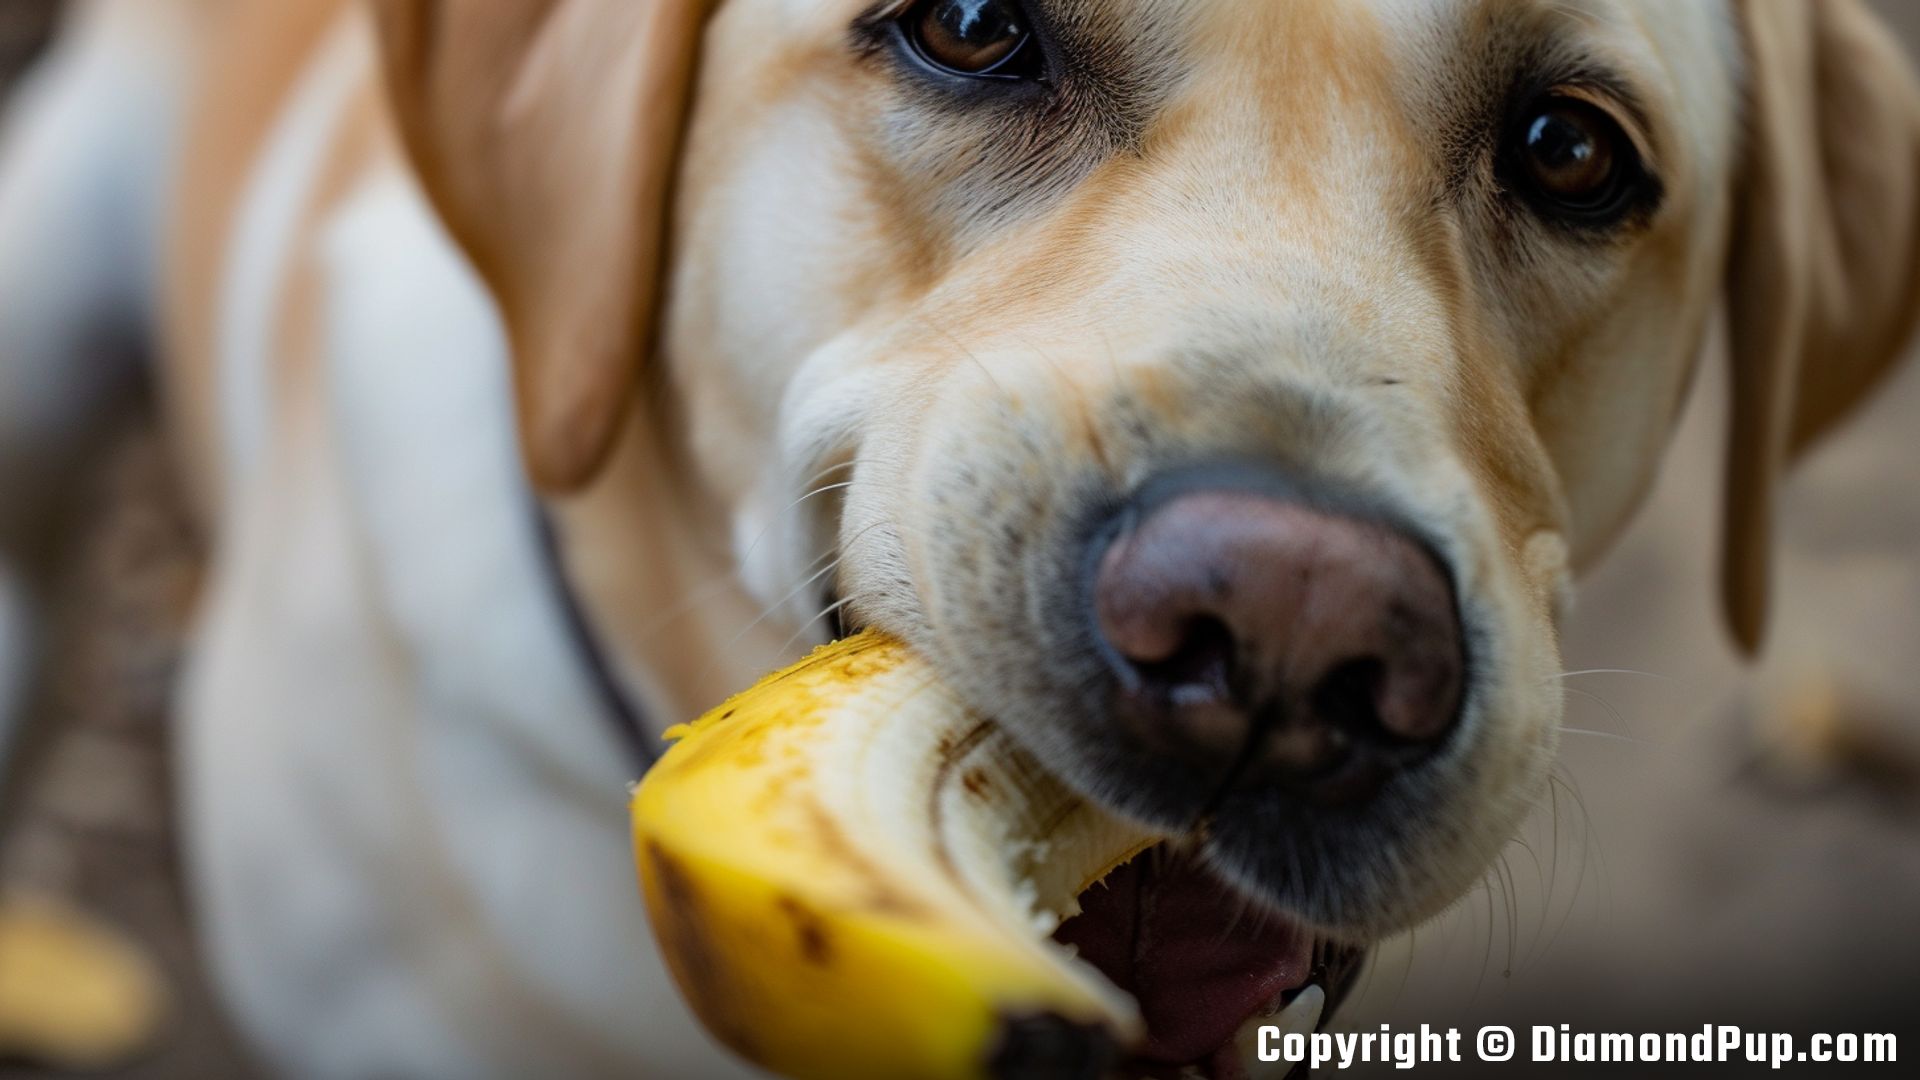 Image of Labrador Eating Banana